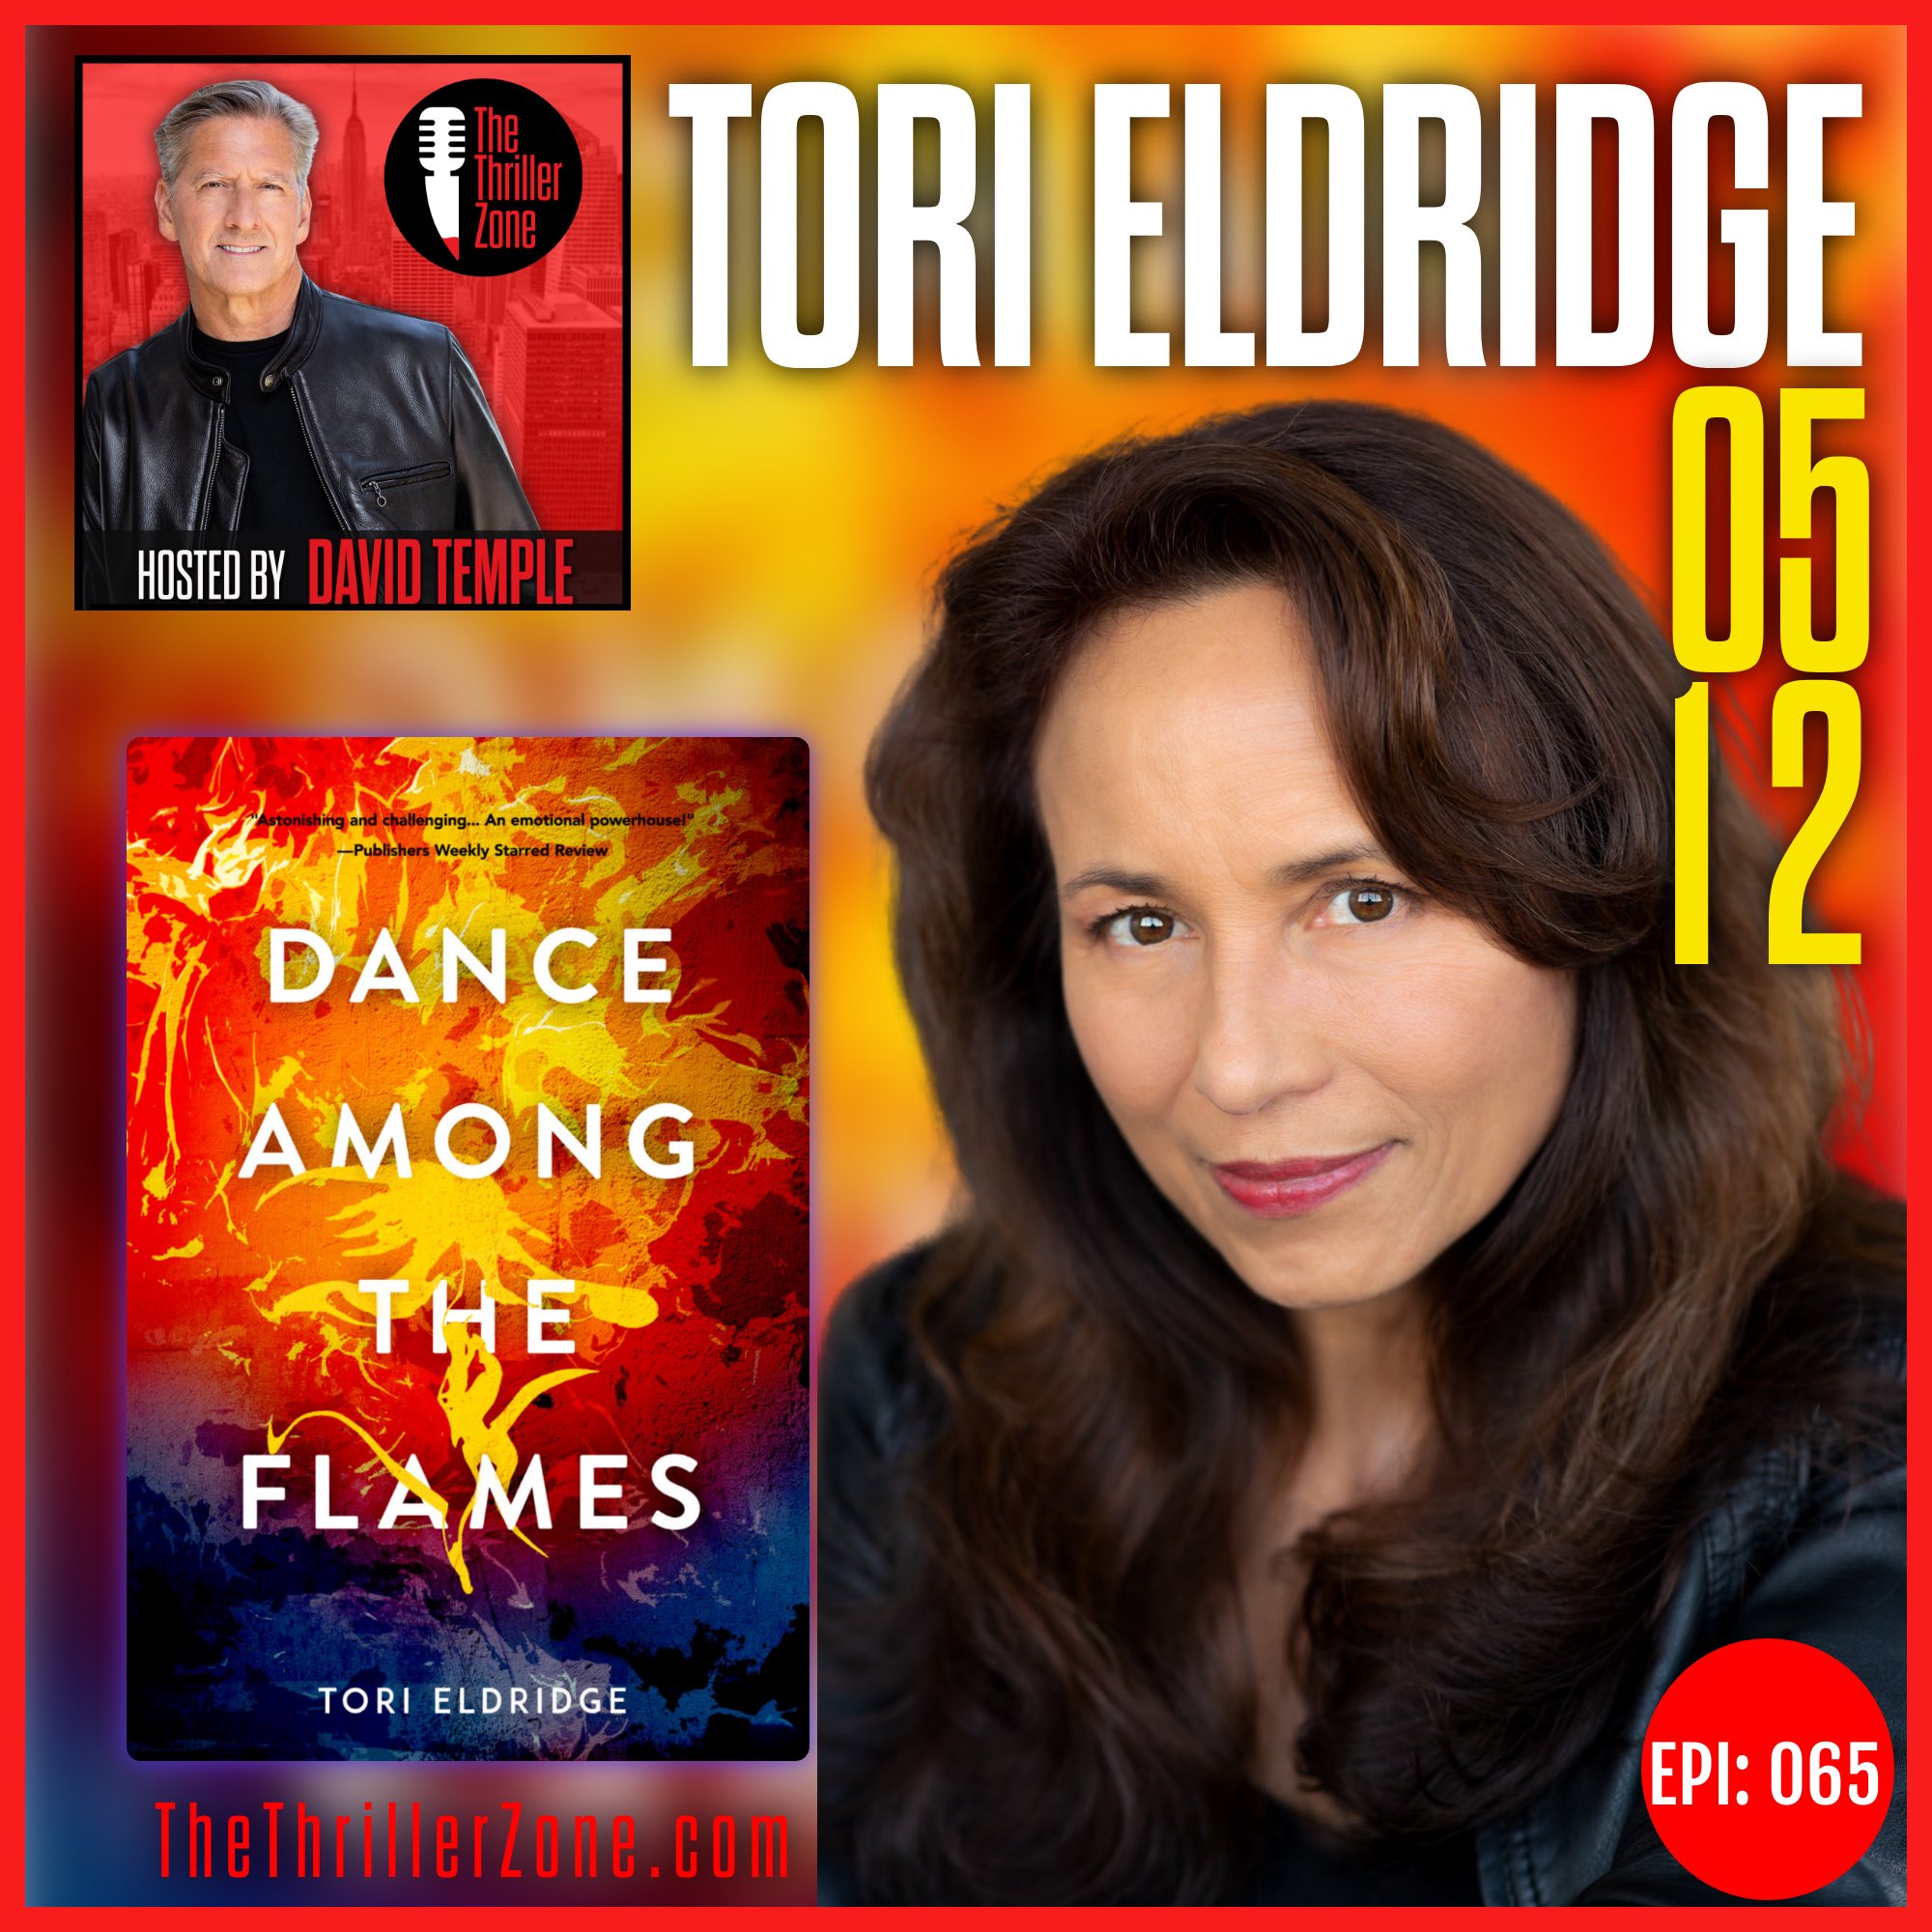 Tori Eldridge, Author of Dance Among The Flames Image